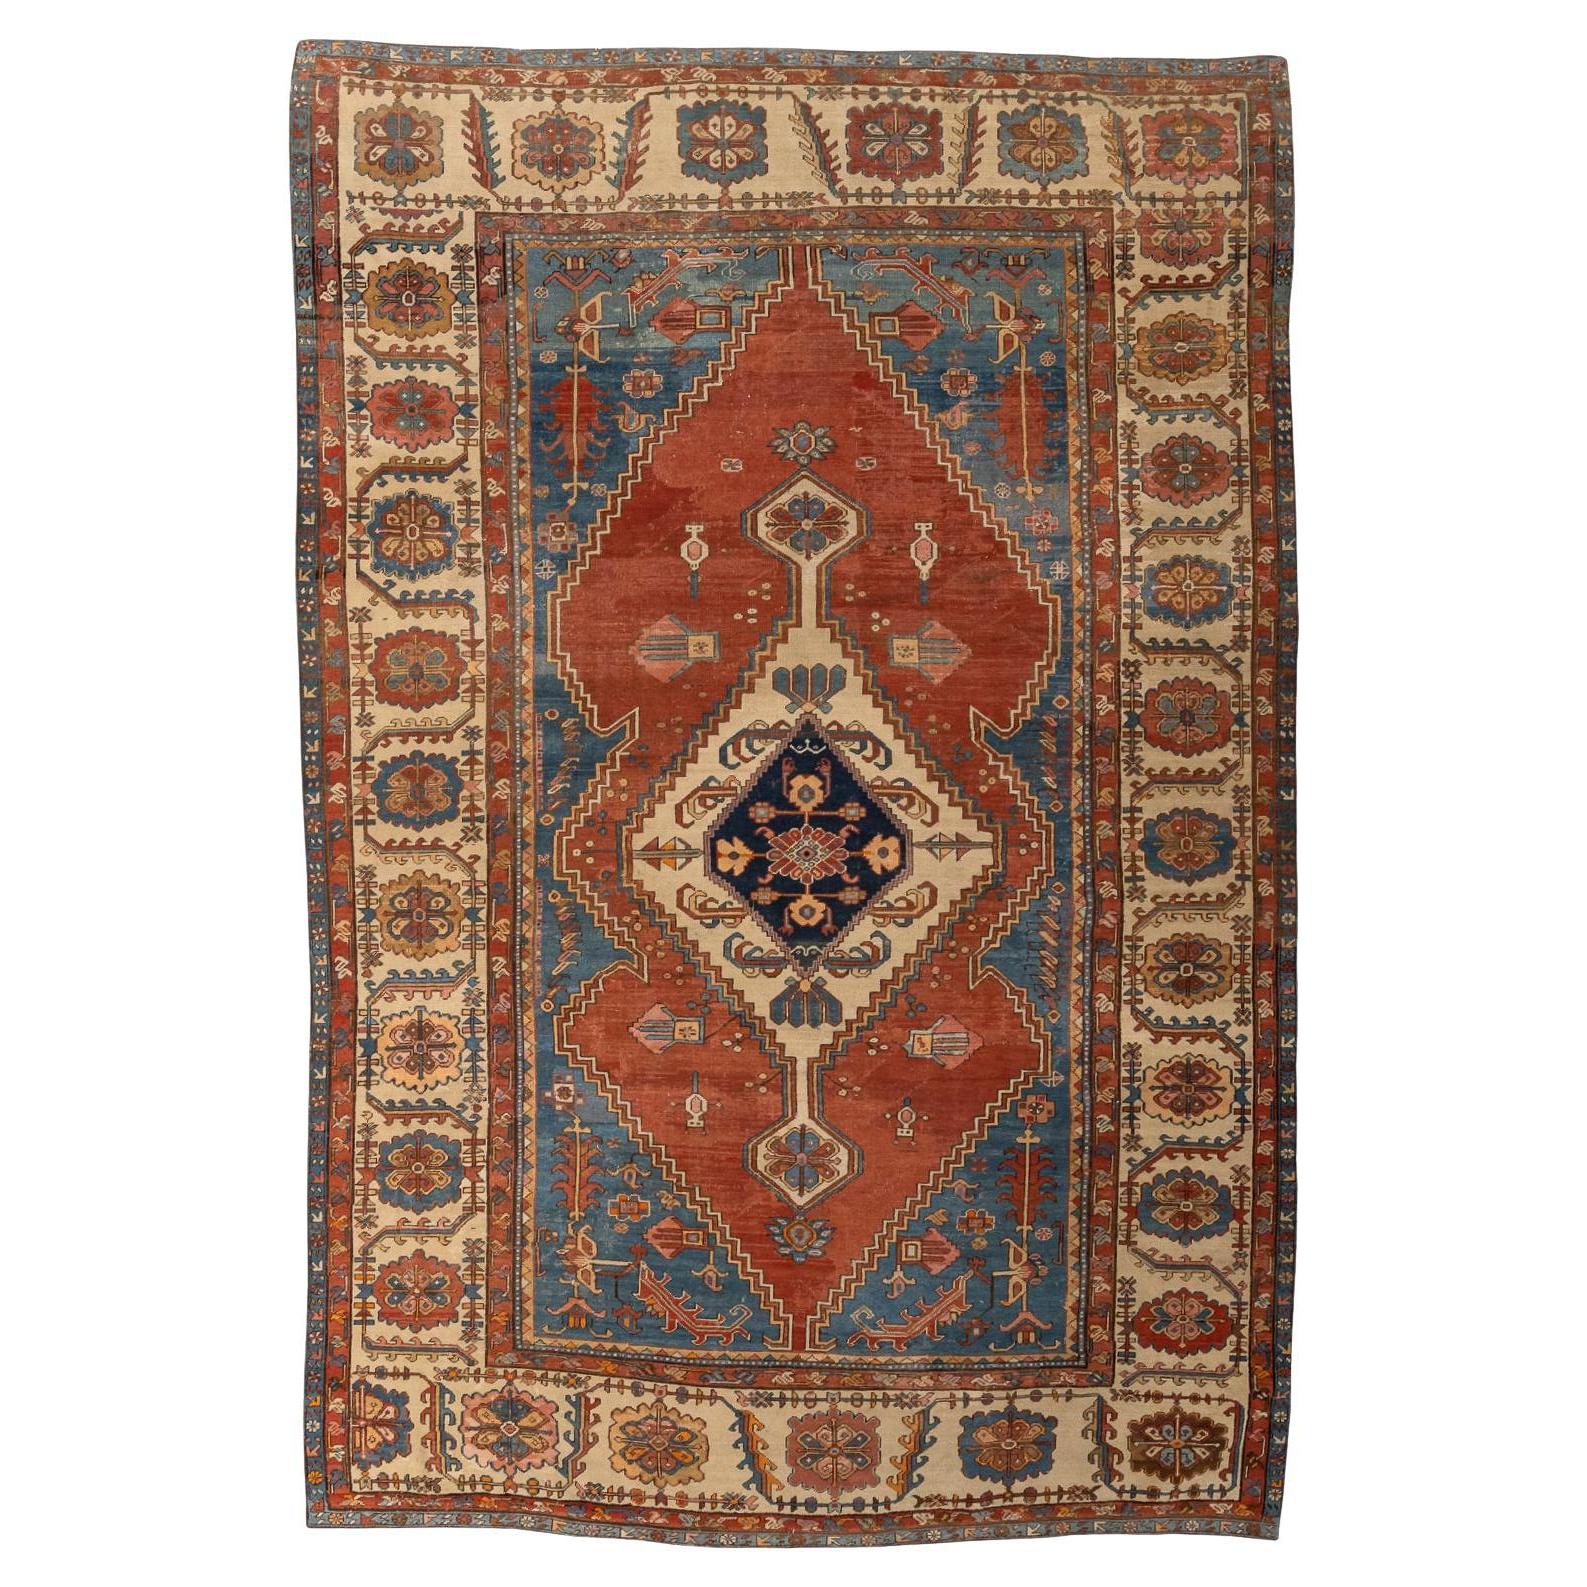 19th Century Antique Persian Serapi Carpet For Sale